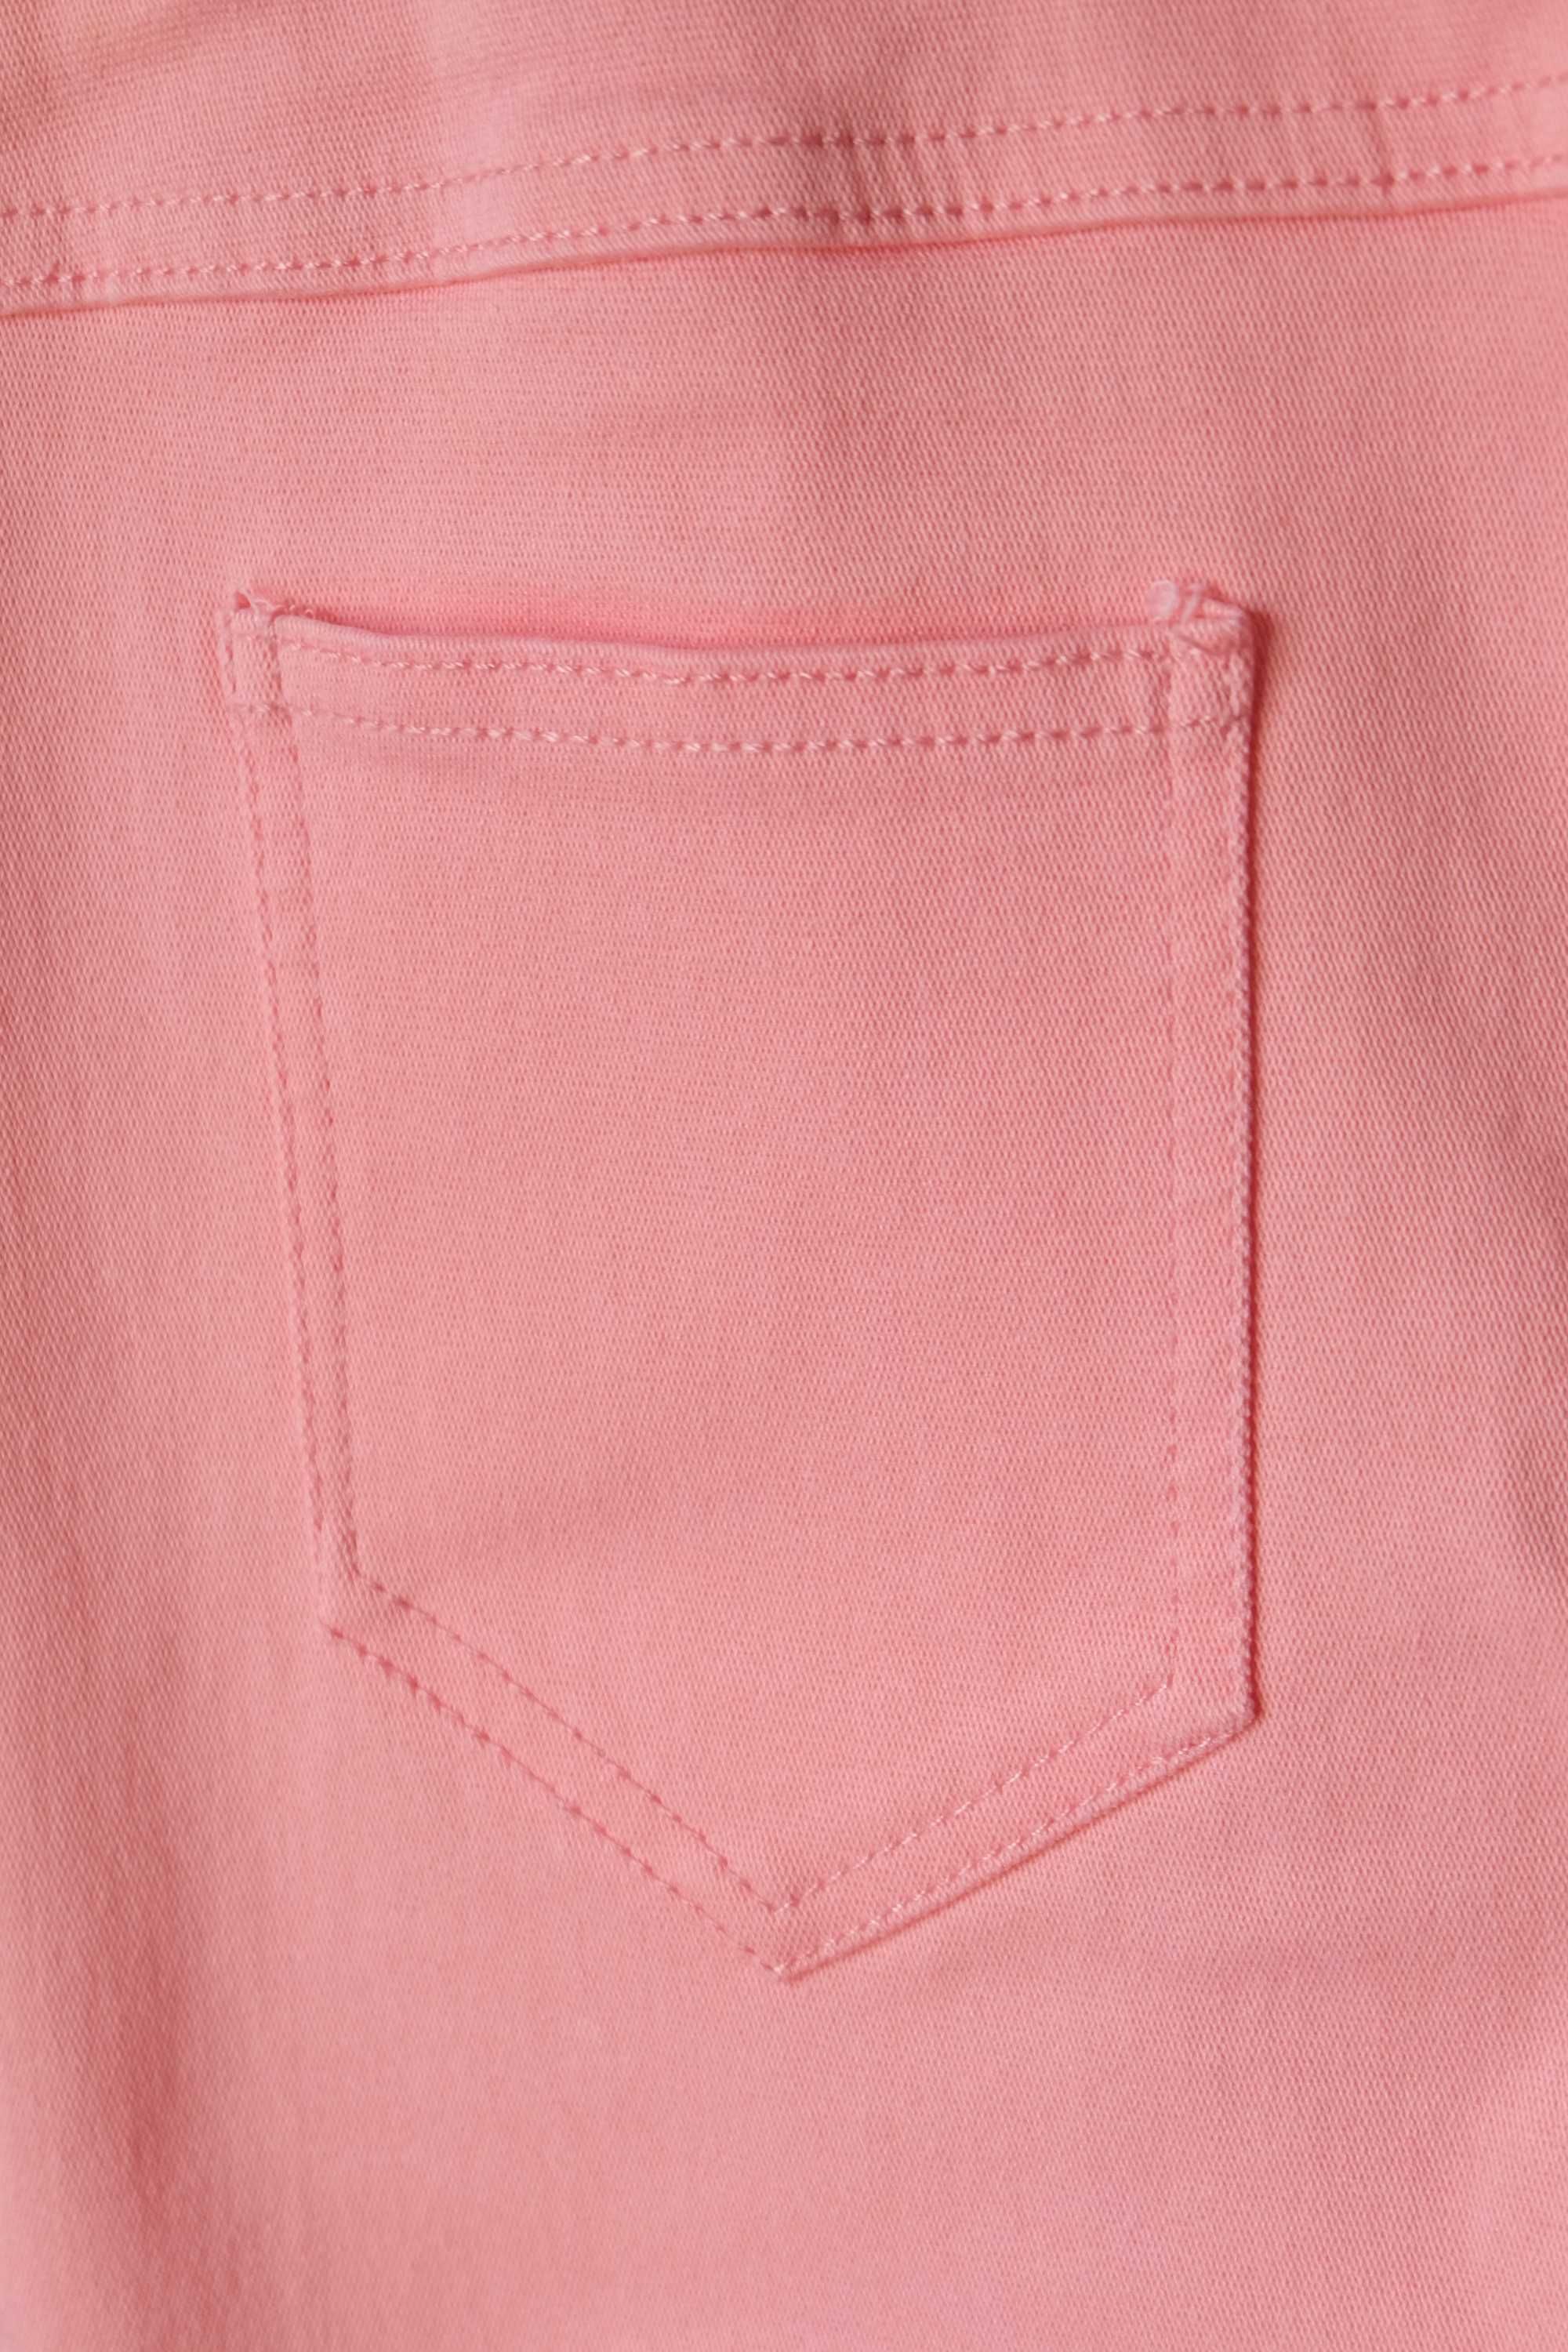 Розовые брюки стрейч.